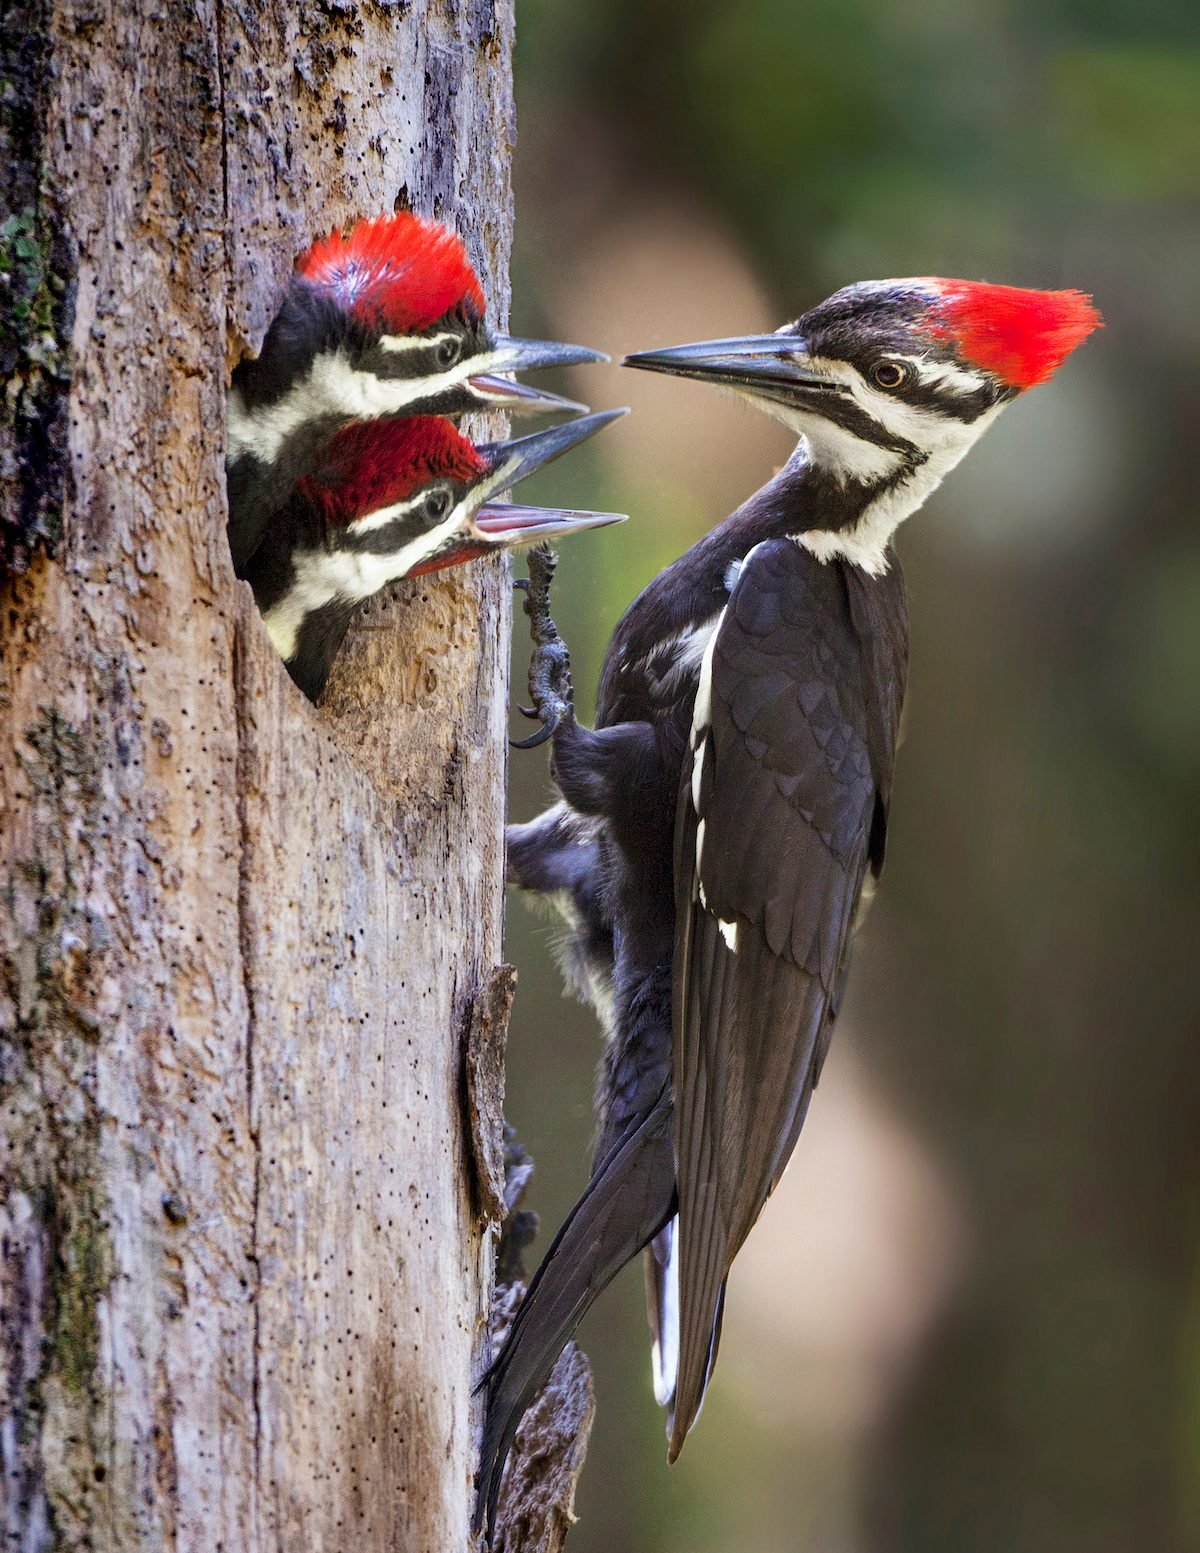 Birds in Swamps: Where Woods Meet Water